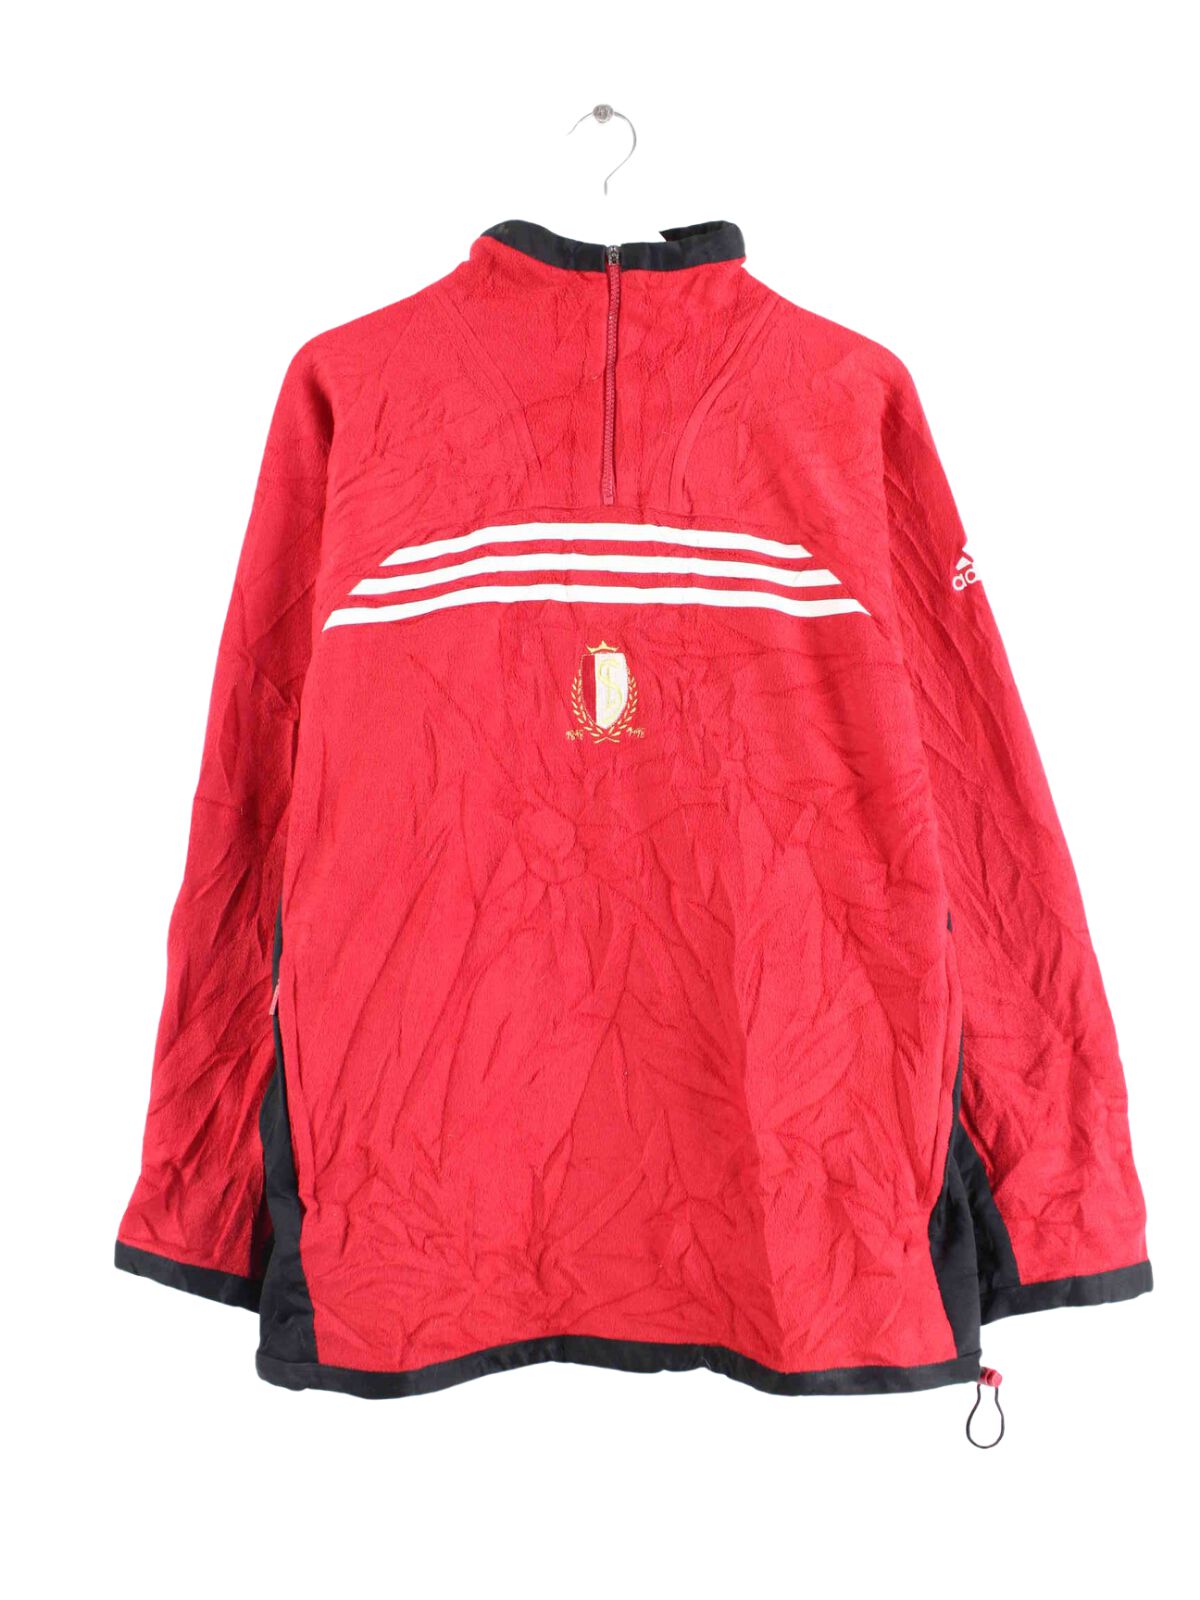 Adidas 90s Vintage Fleece Half Zip Sweater Rot L (front image)